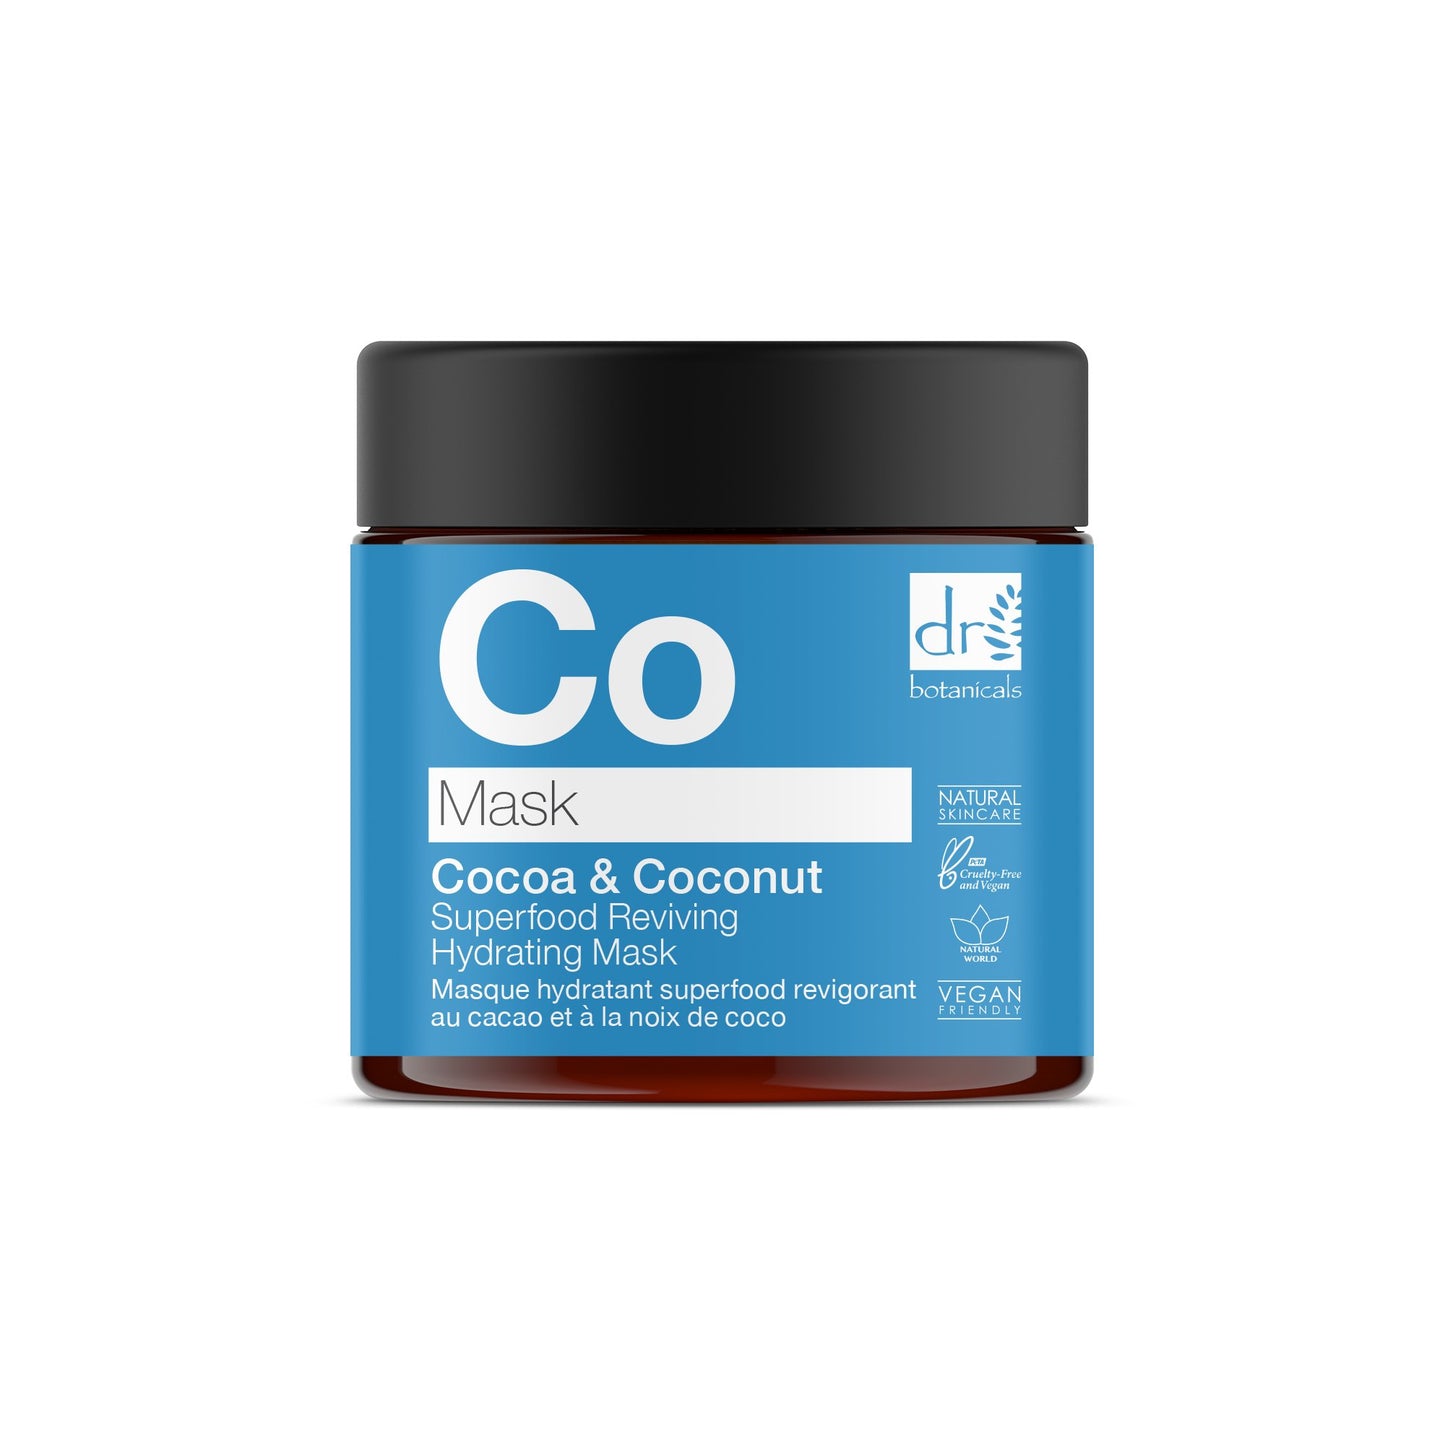 Dr Botanicals - Cocoa & Coconut Superfood Reviviendo máscara hidratante